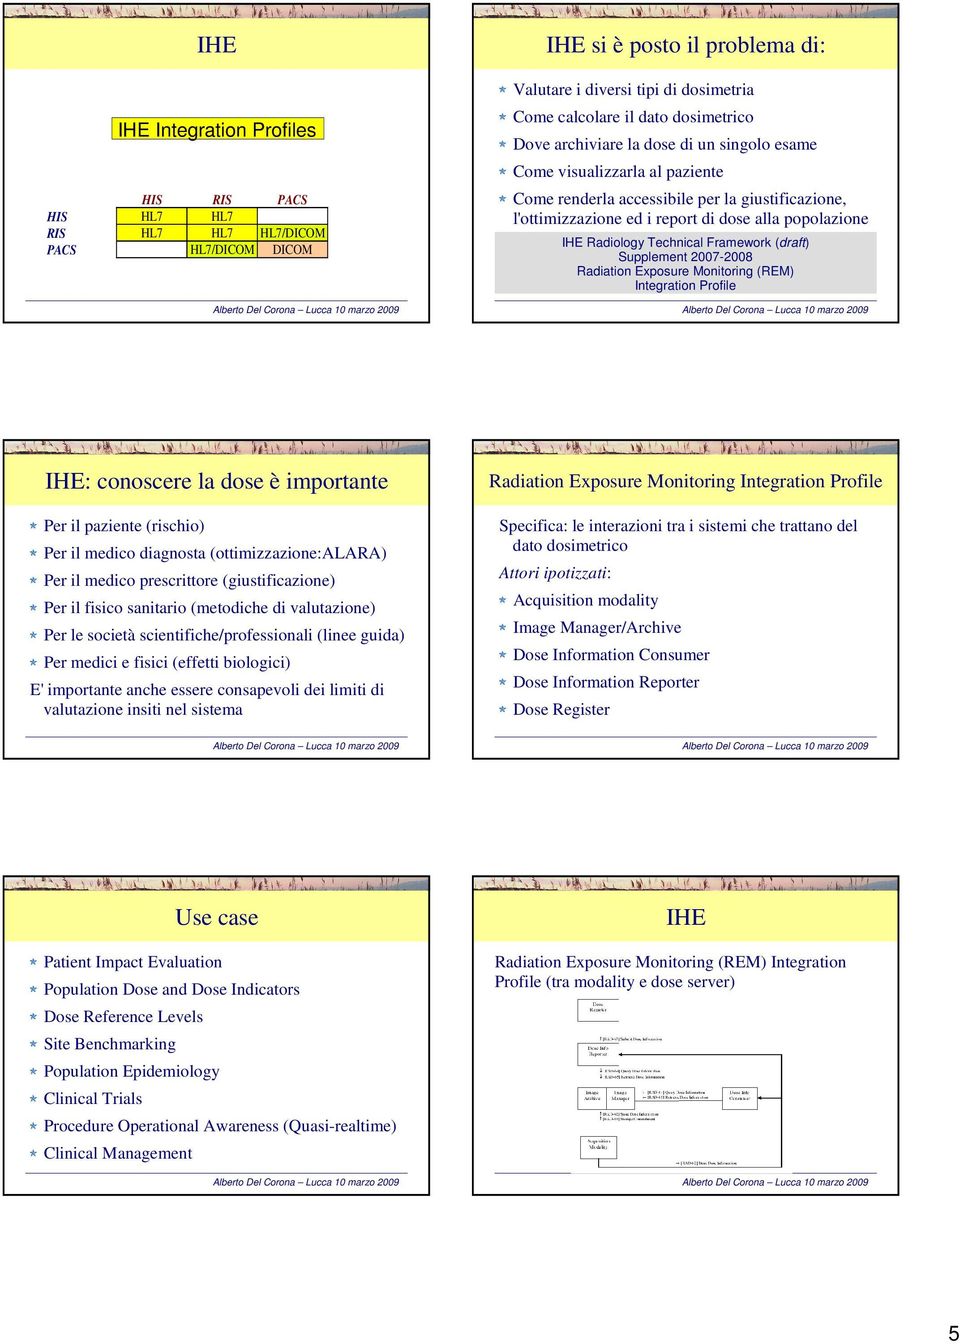 Radiology Technical Framework (draft) Supplement 2007-2008 Radiation Exposure Monitoring (REM) Integration Profile IHE: conoscere la dose è importante Per il paziente (rischio) Per il medico